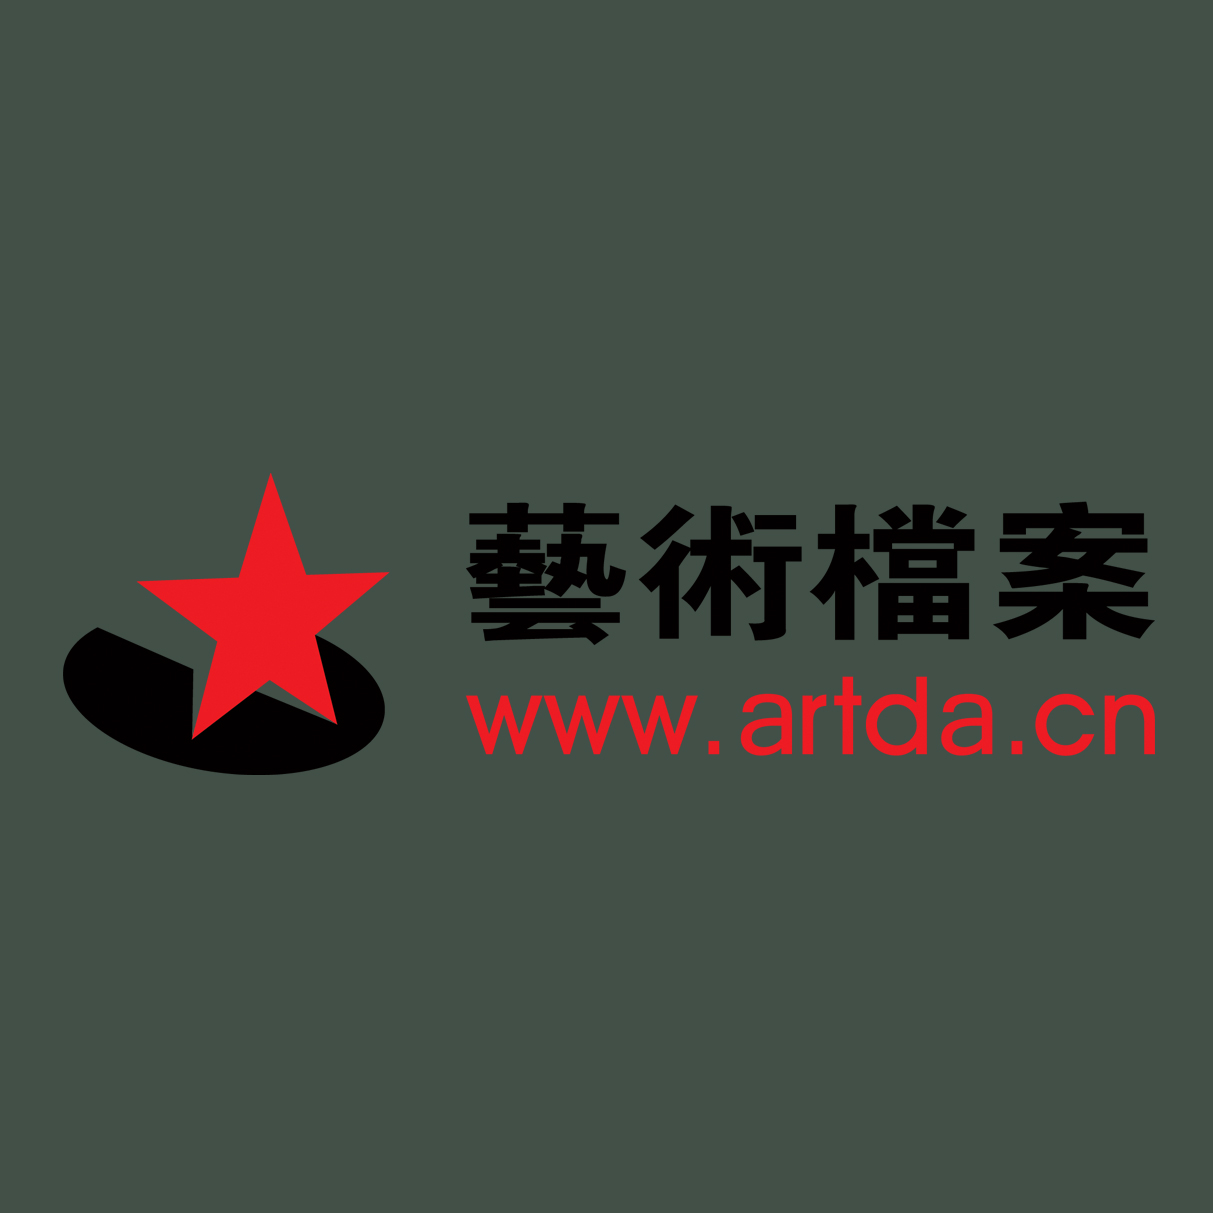 artda.cn艺术档案